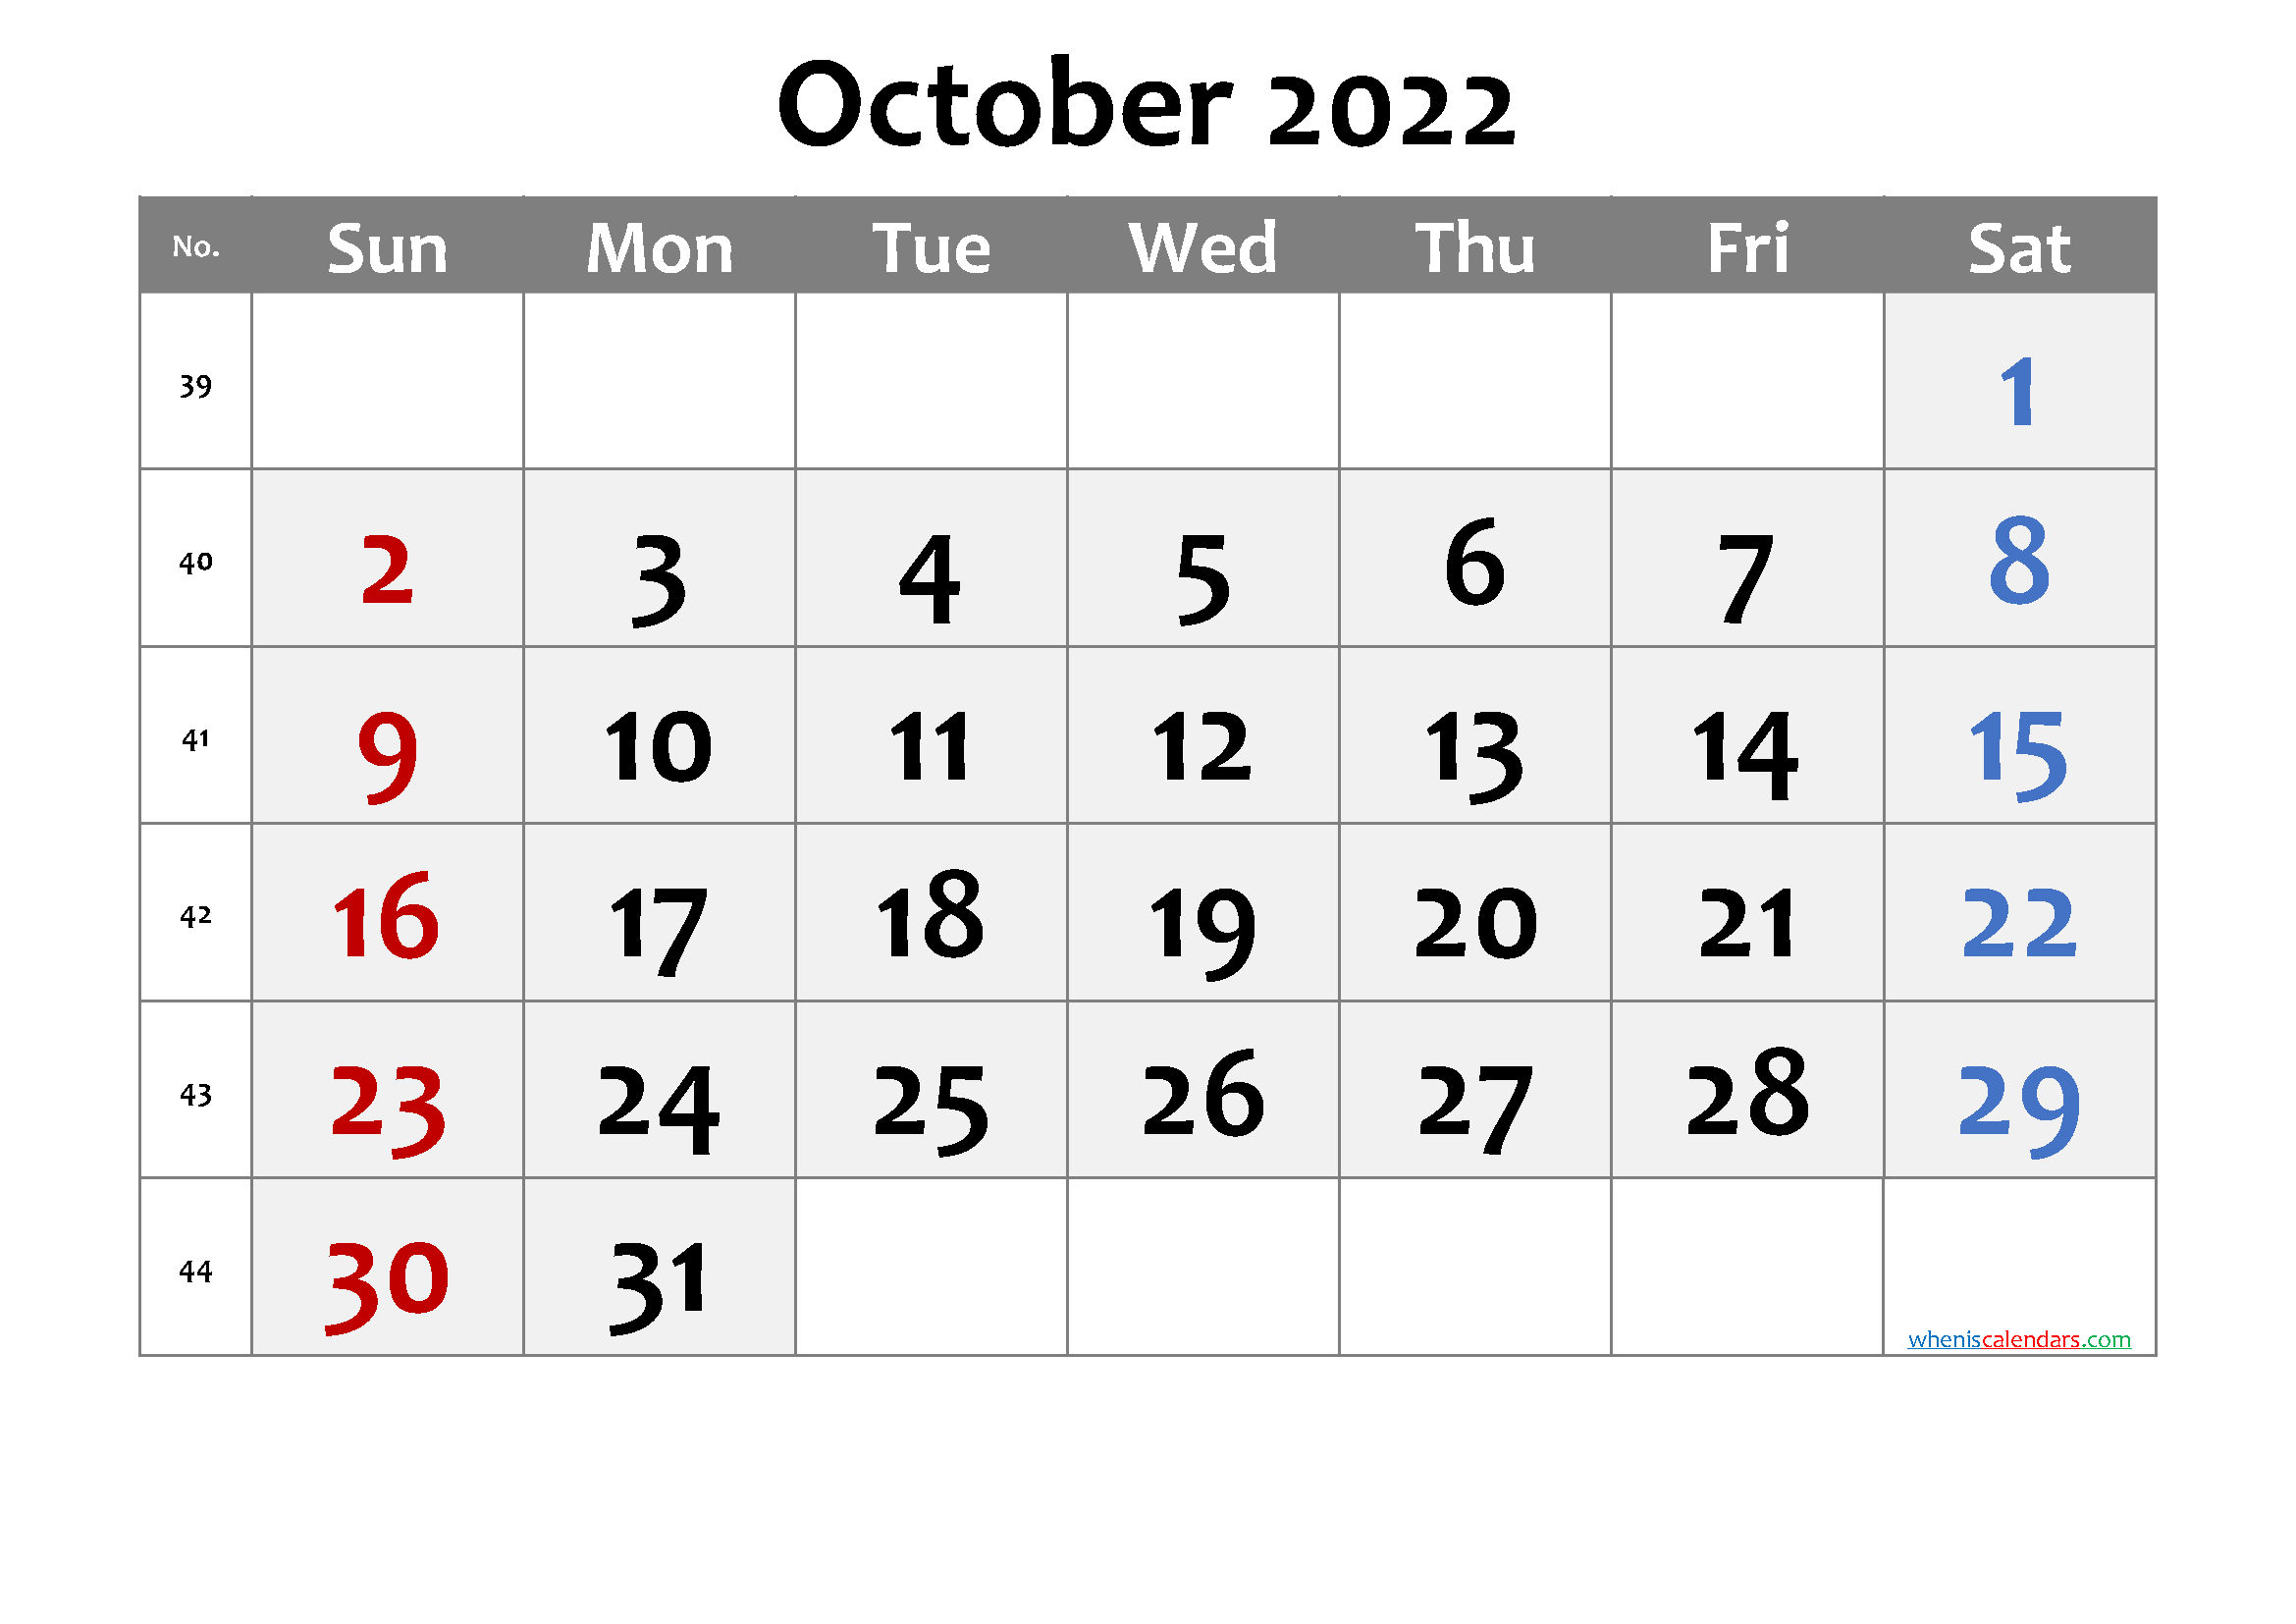 October 2022 Printable Calendar with Week Numbers